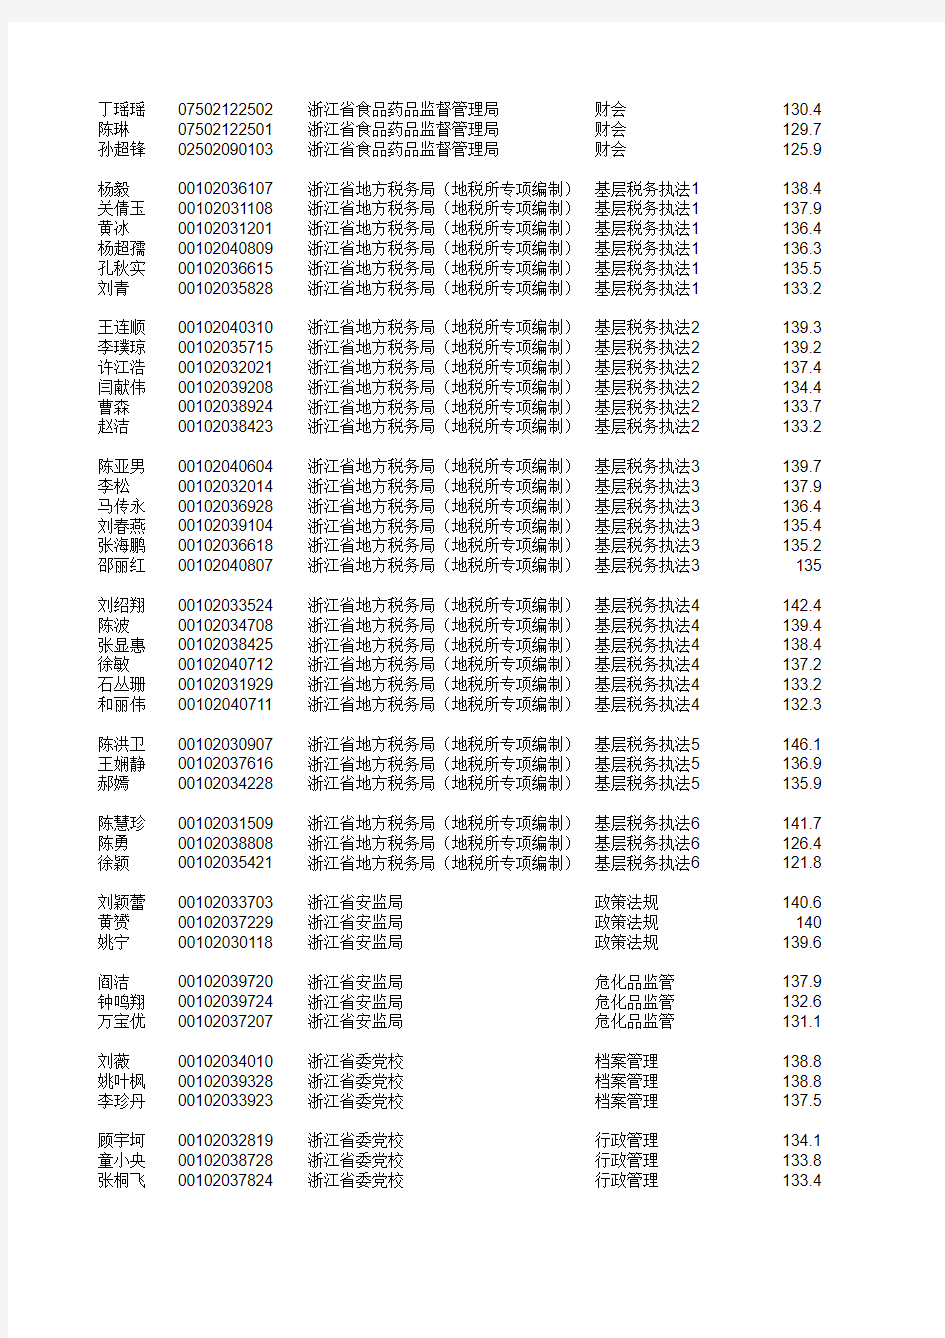 2015年浙江省省级机关入围面试人员名单